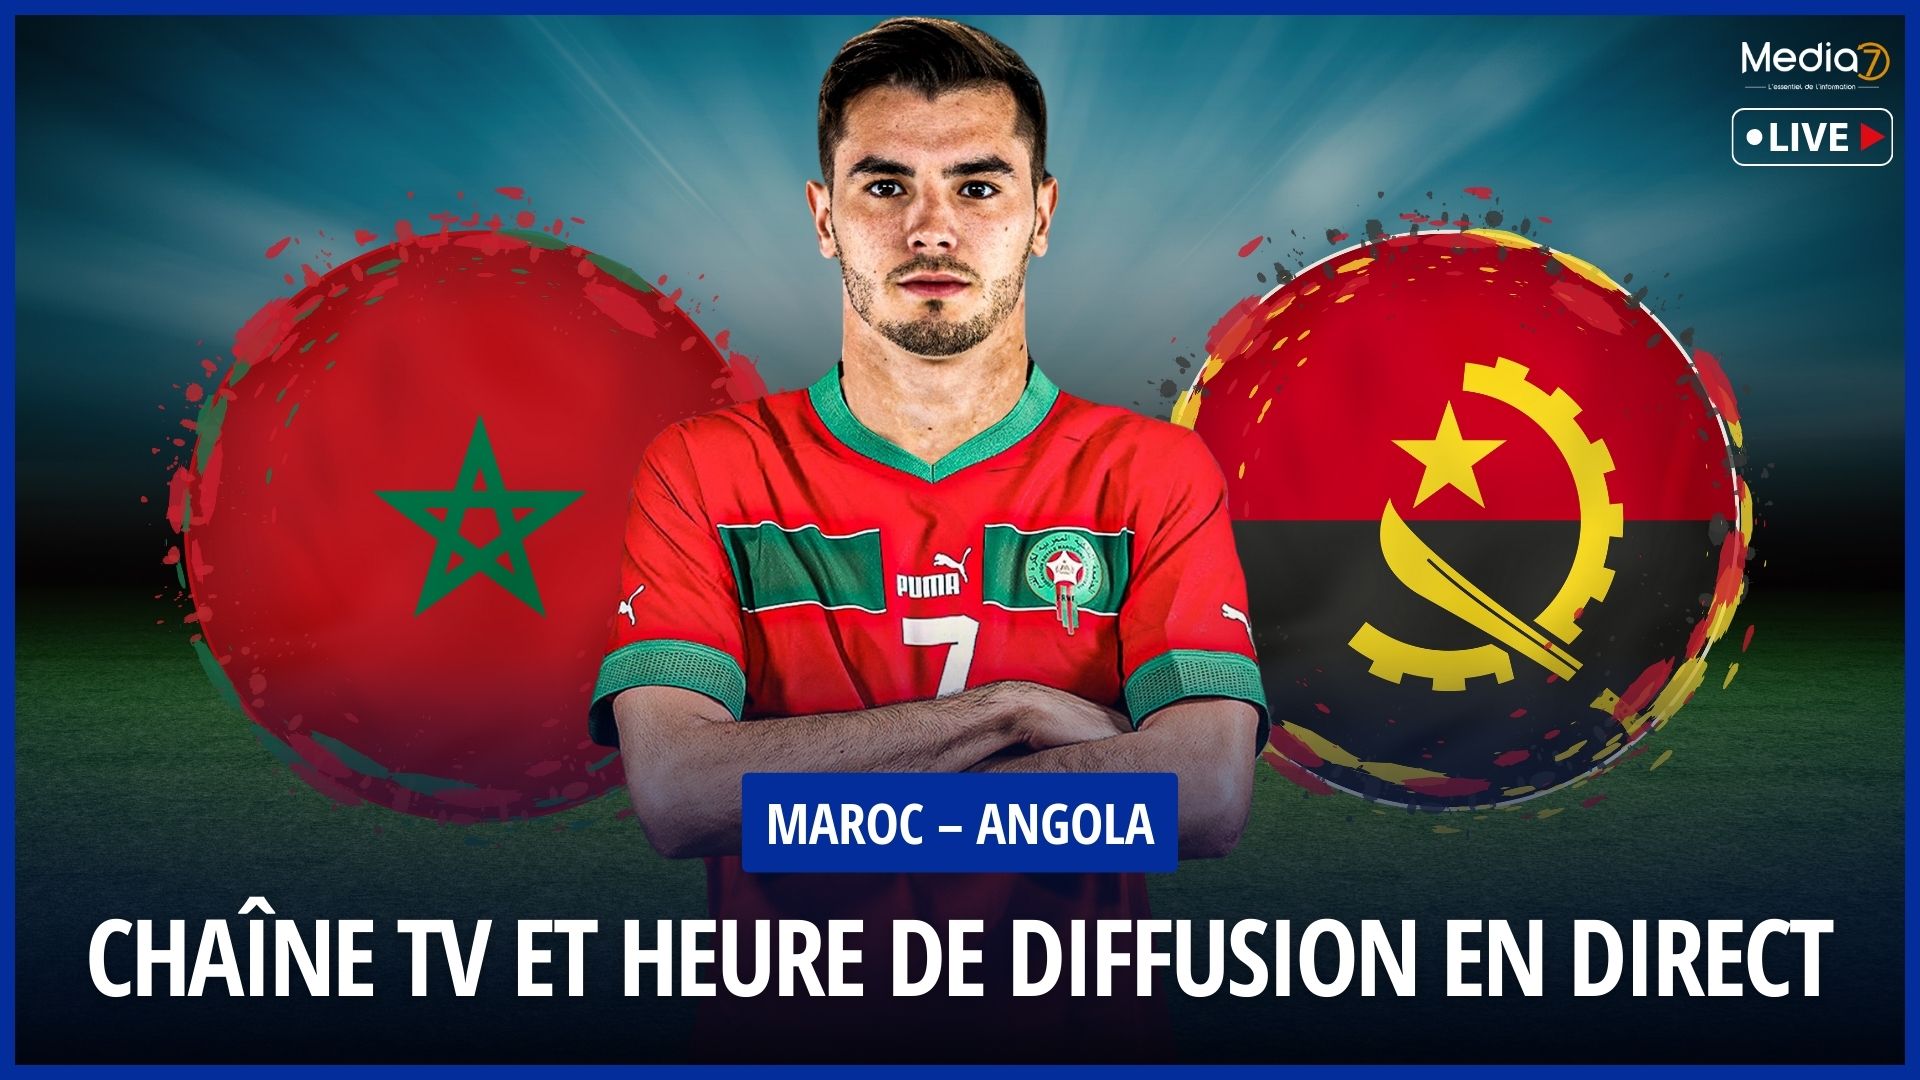 Maroc – Angola